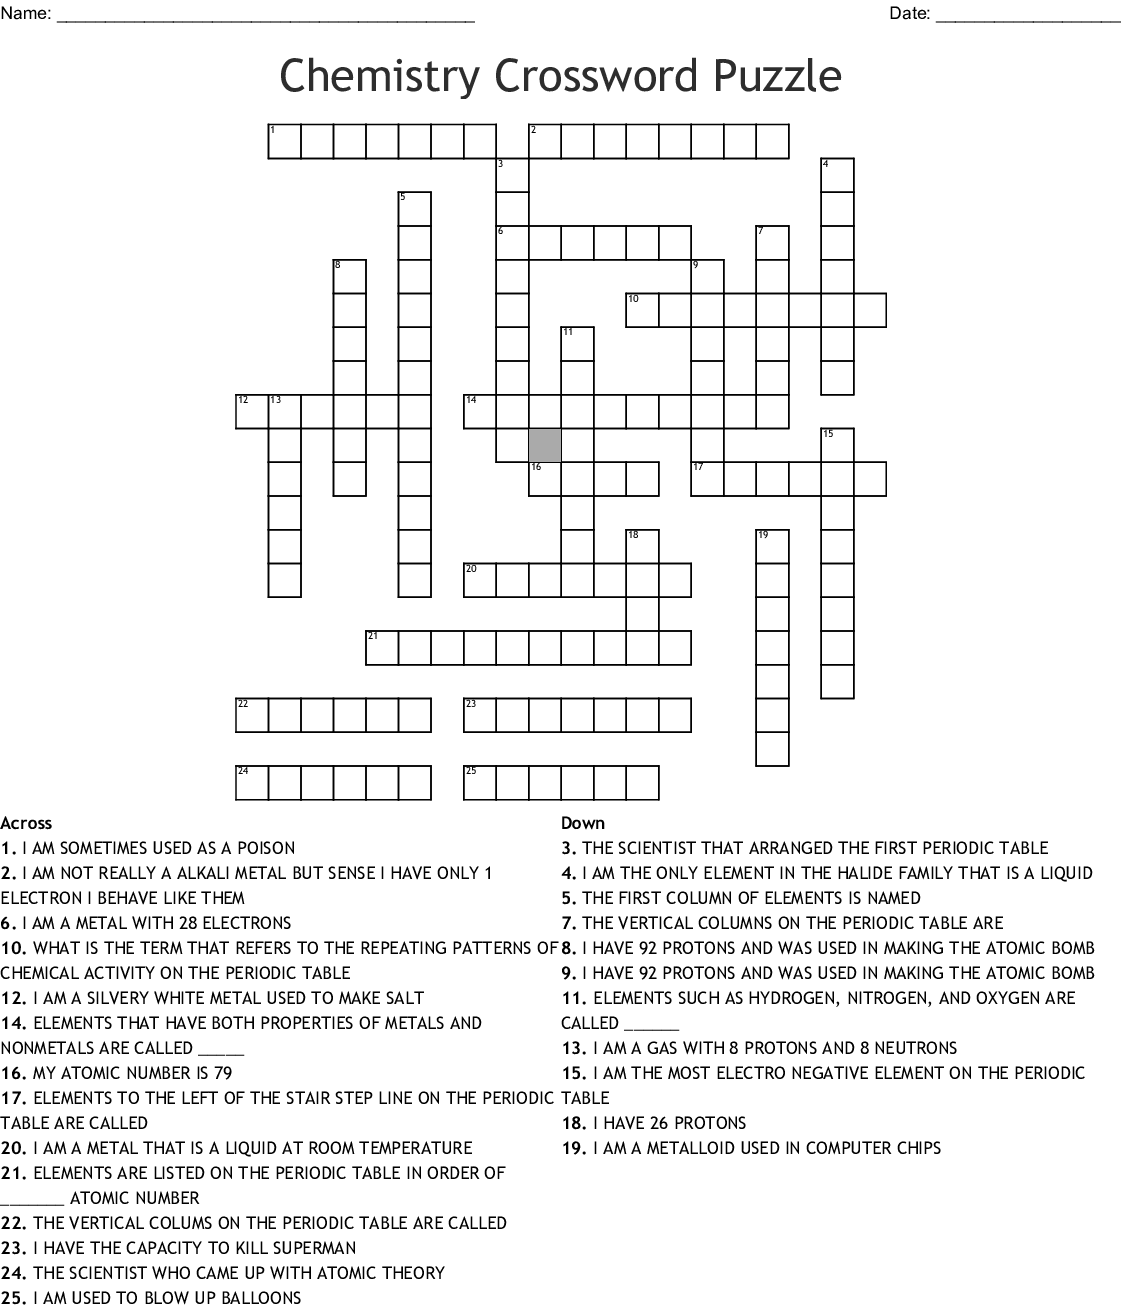 Chemistry Crossword Puzzle WordMint - Easy Chemistry Crossword Puzzle